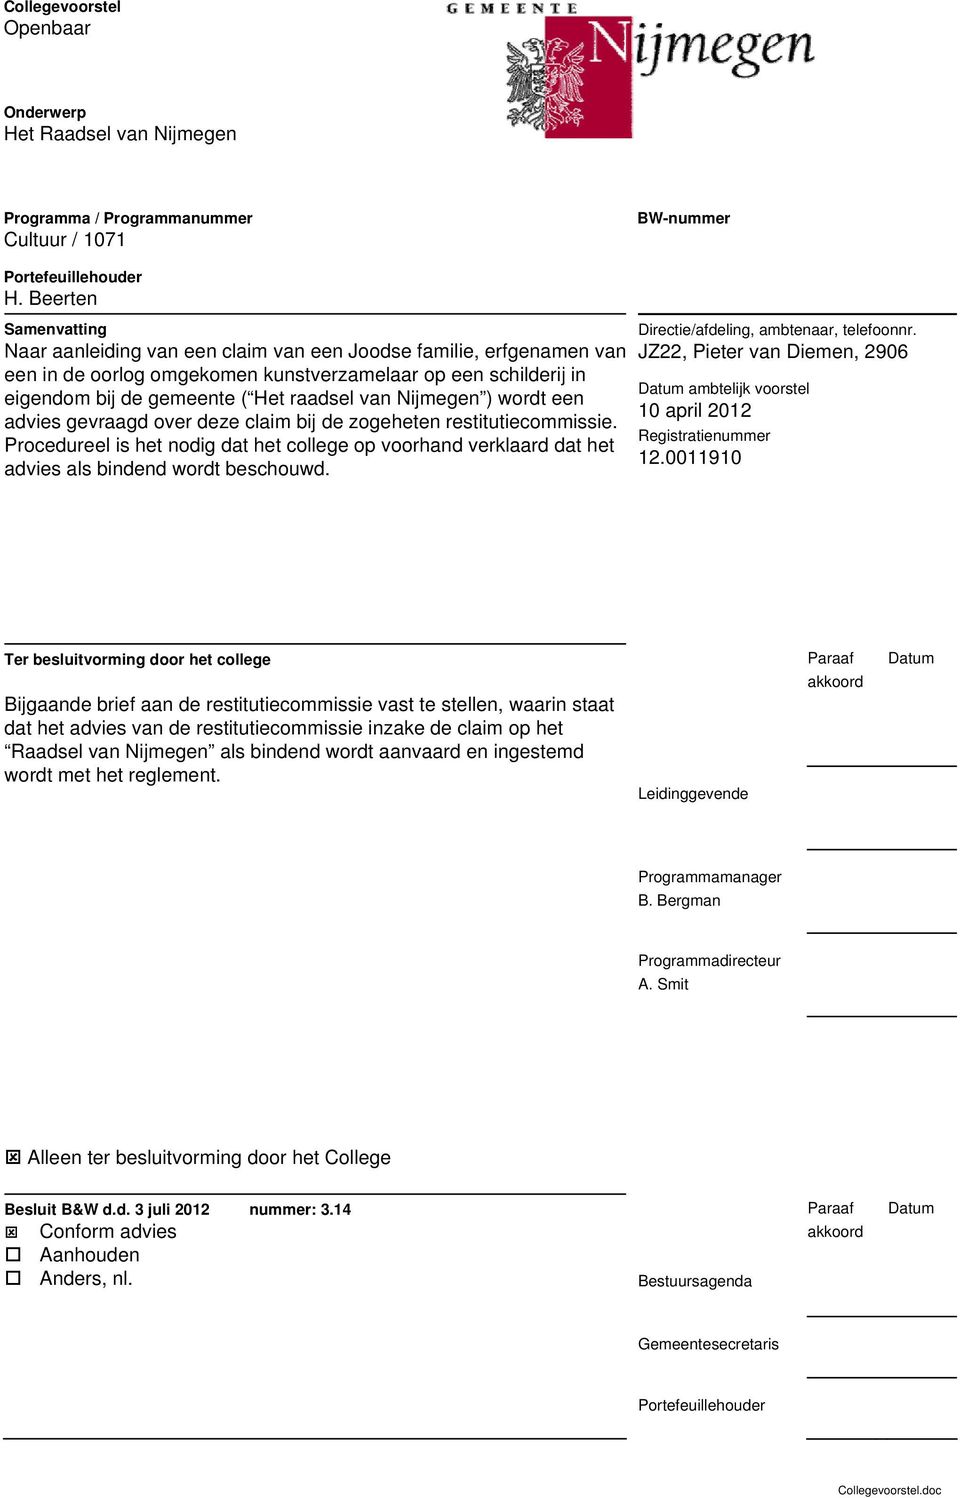 Nijmegen ) wordt een advies gevraagd over deze claim bij de zogeheten restitutiecommissie. Procedureel is het nodig dat het college op voorhand verklaard dat het advies als bindend wordt beschouwd.